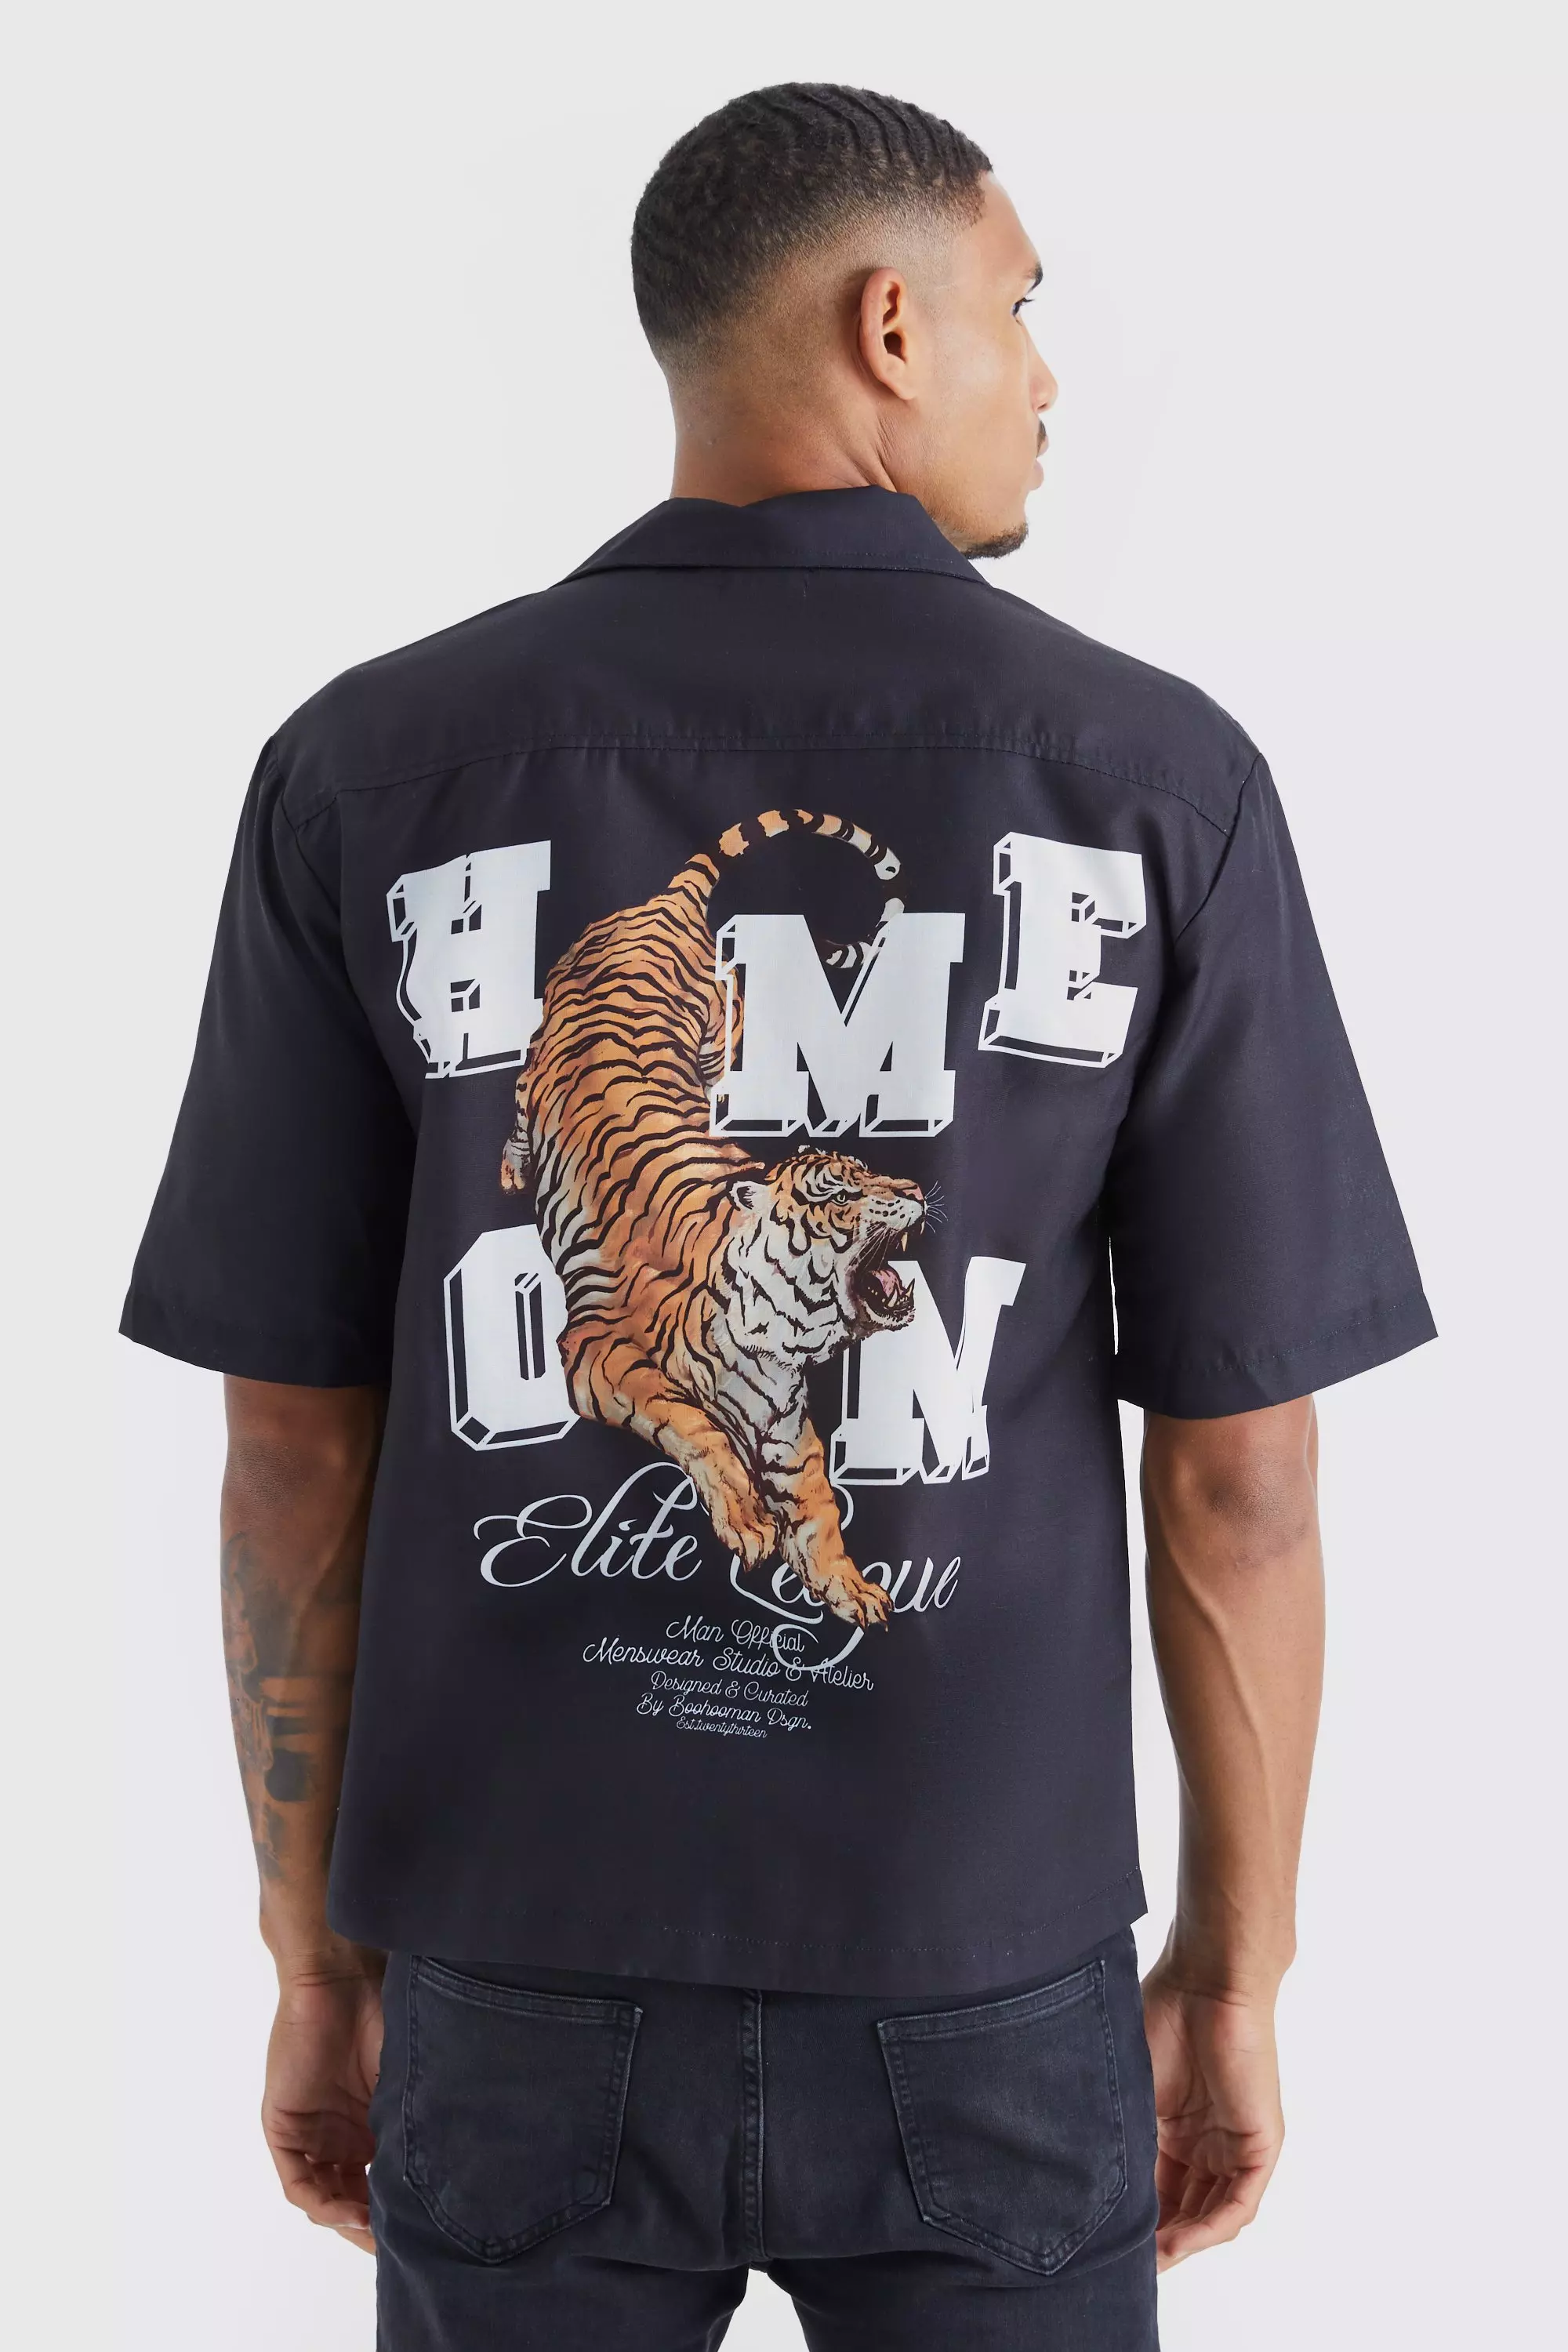 Patterned Shirt - Black/tigers - Men